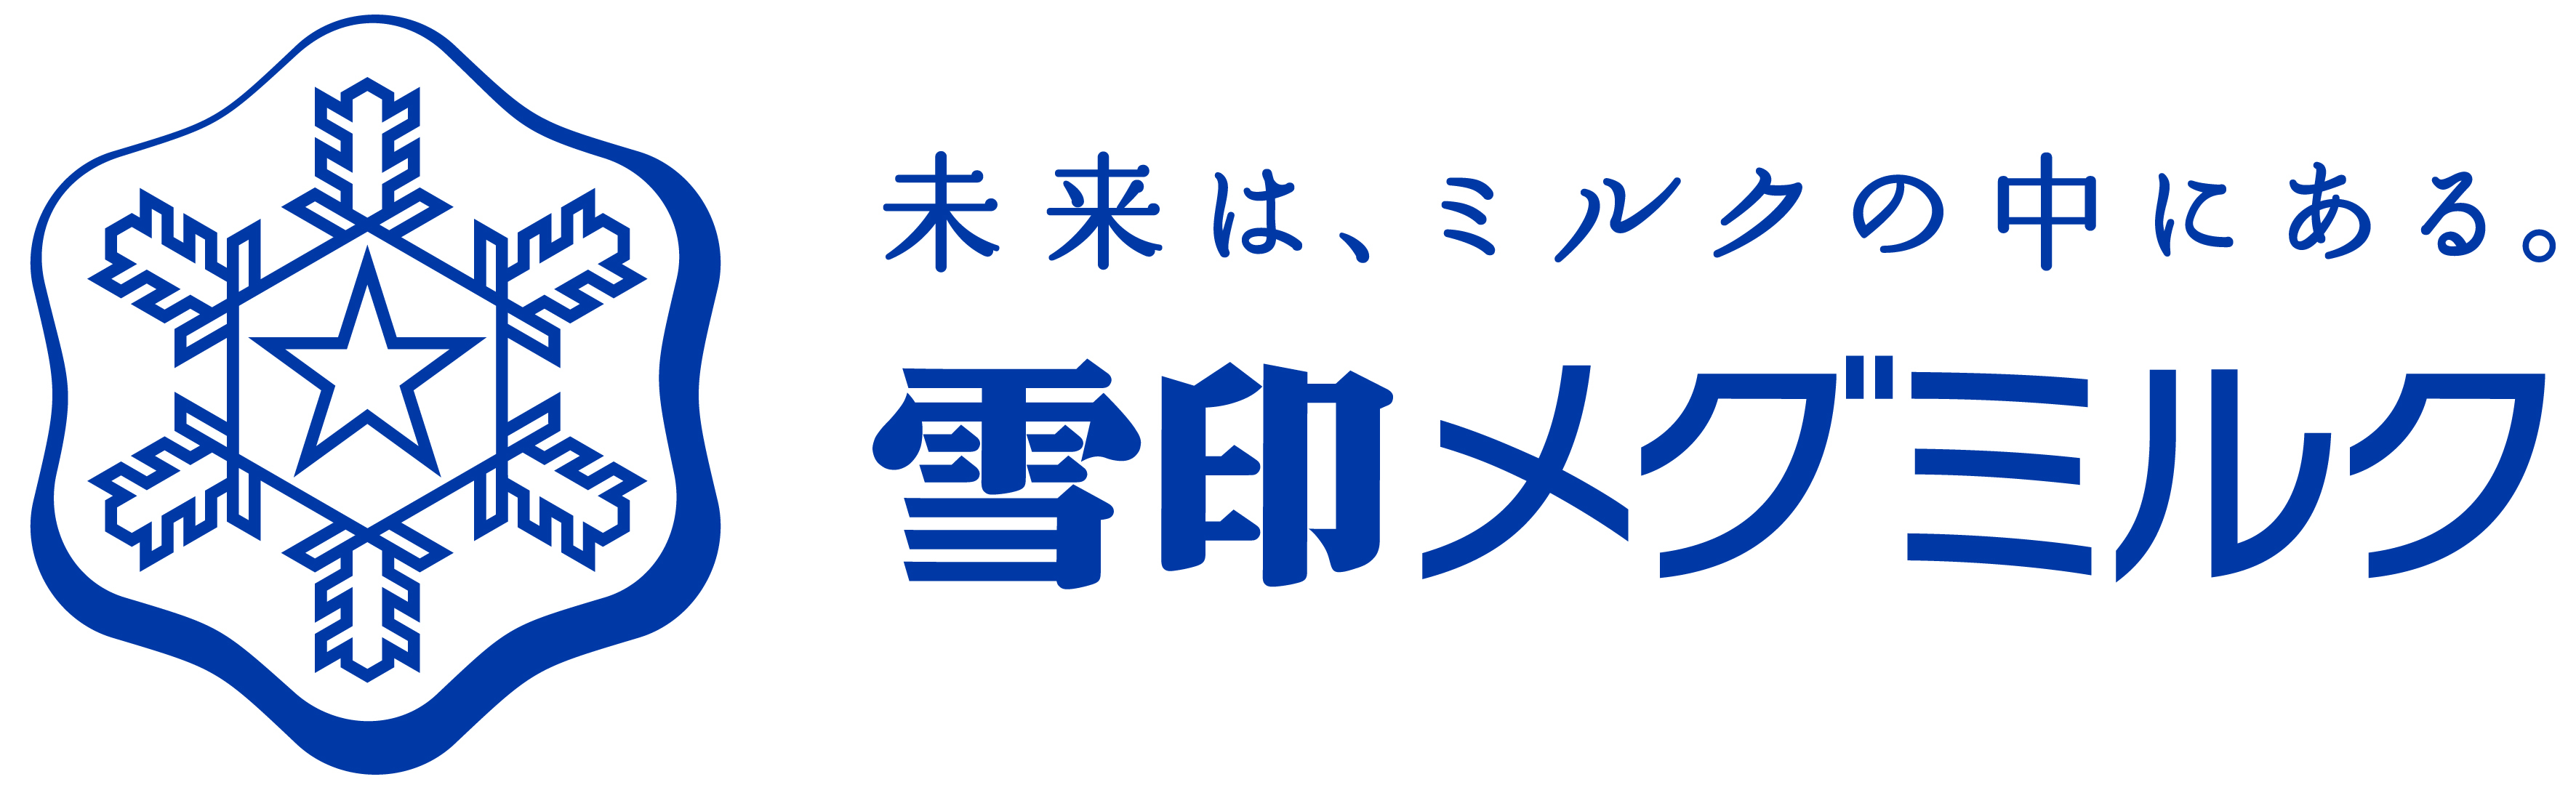 2019/8/7 雪印メグミルク ファミリーコンサート 4名引換券